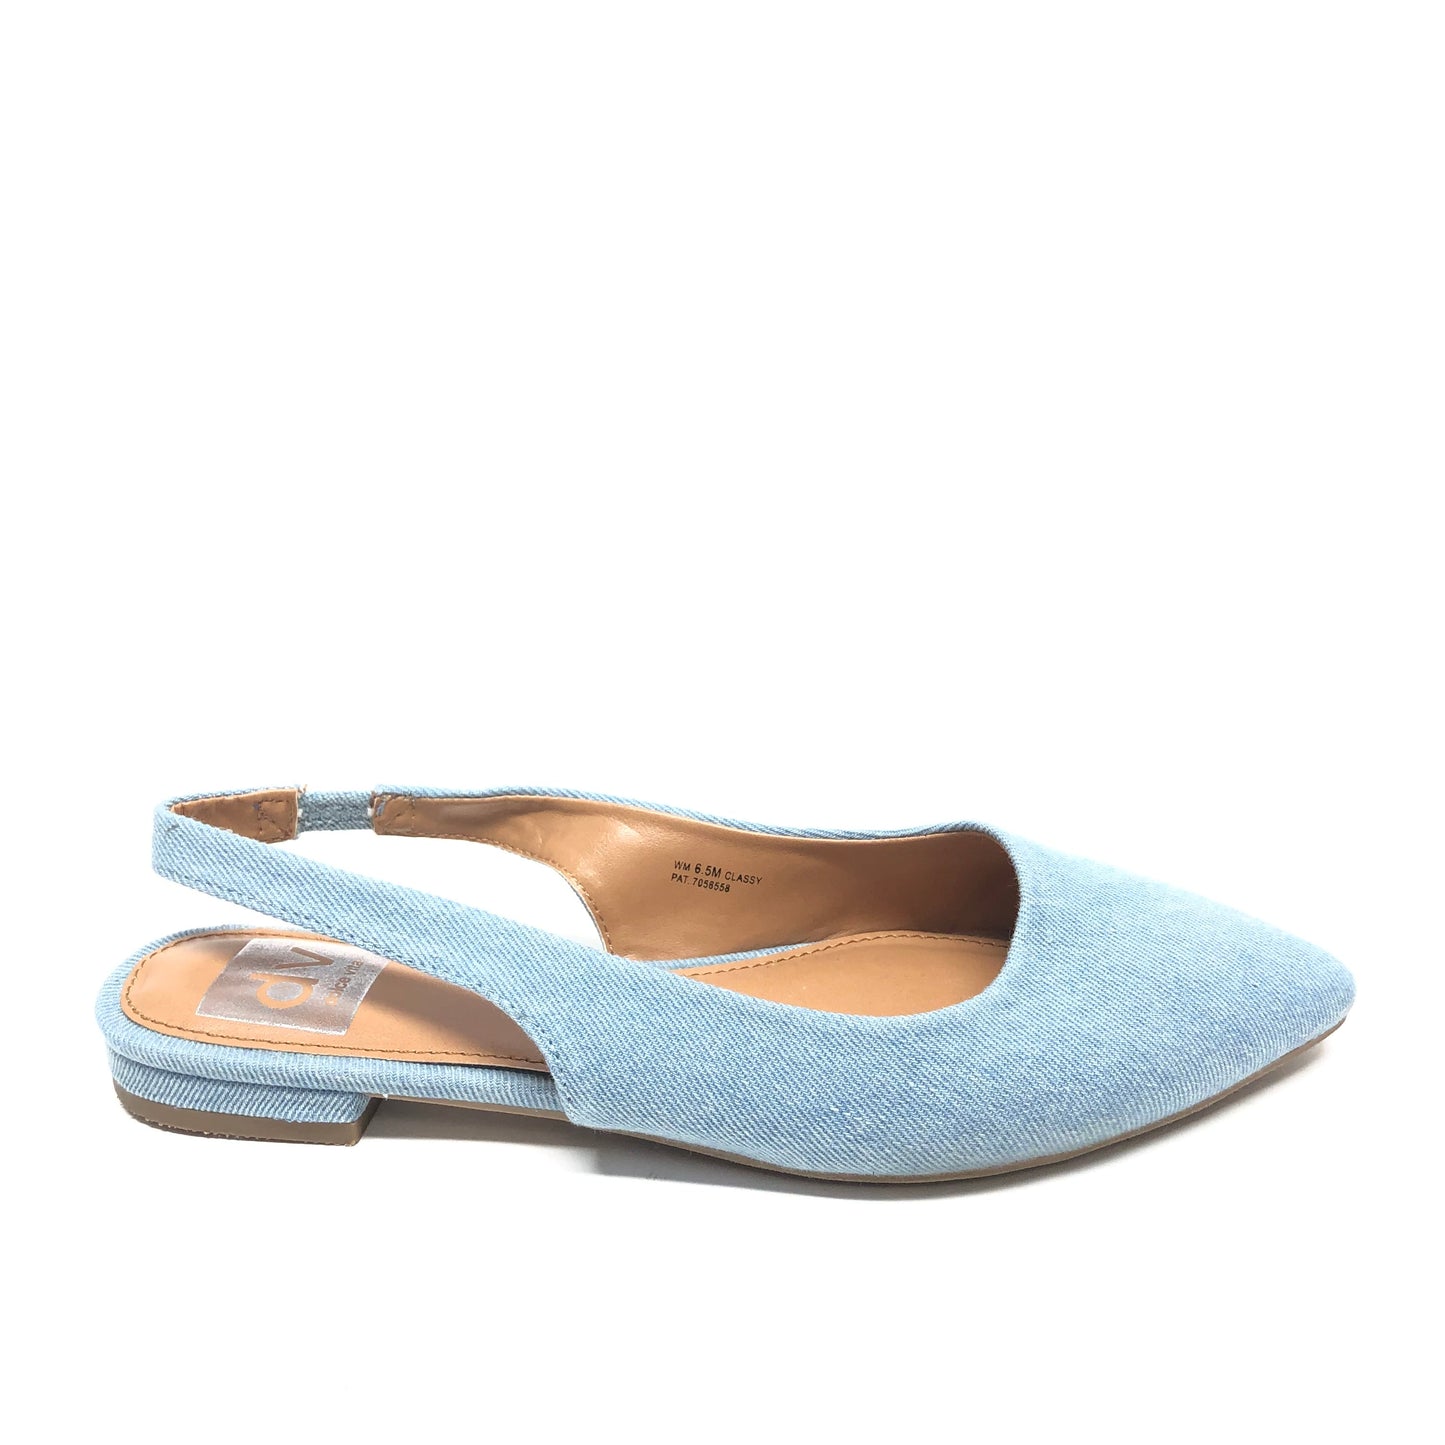 Blue Shoes Flats Dv, Size 6.5